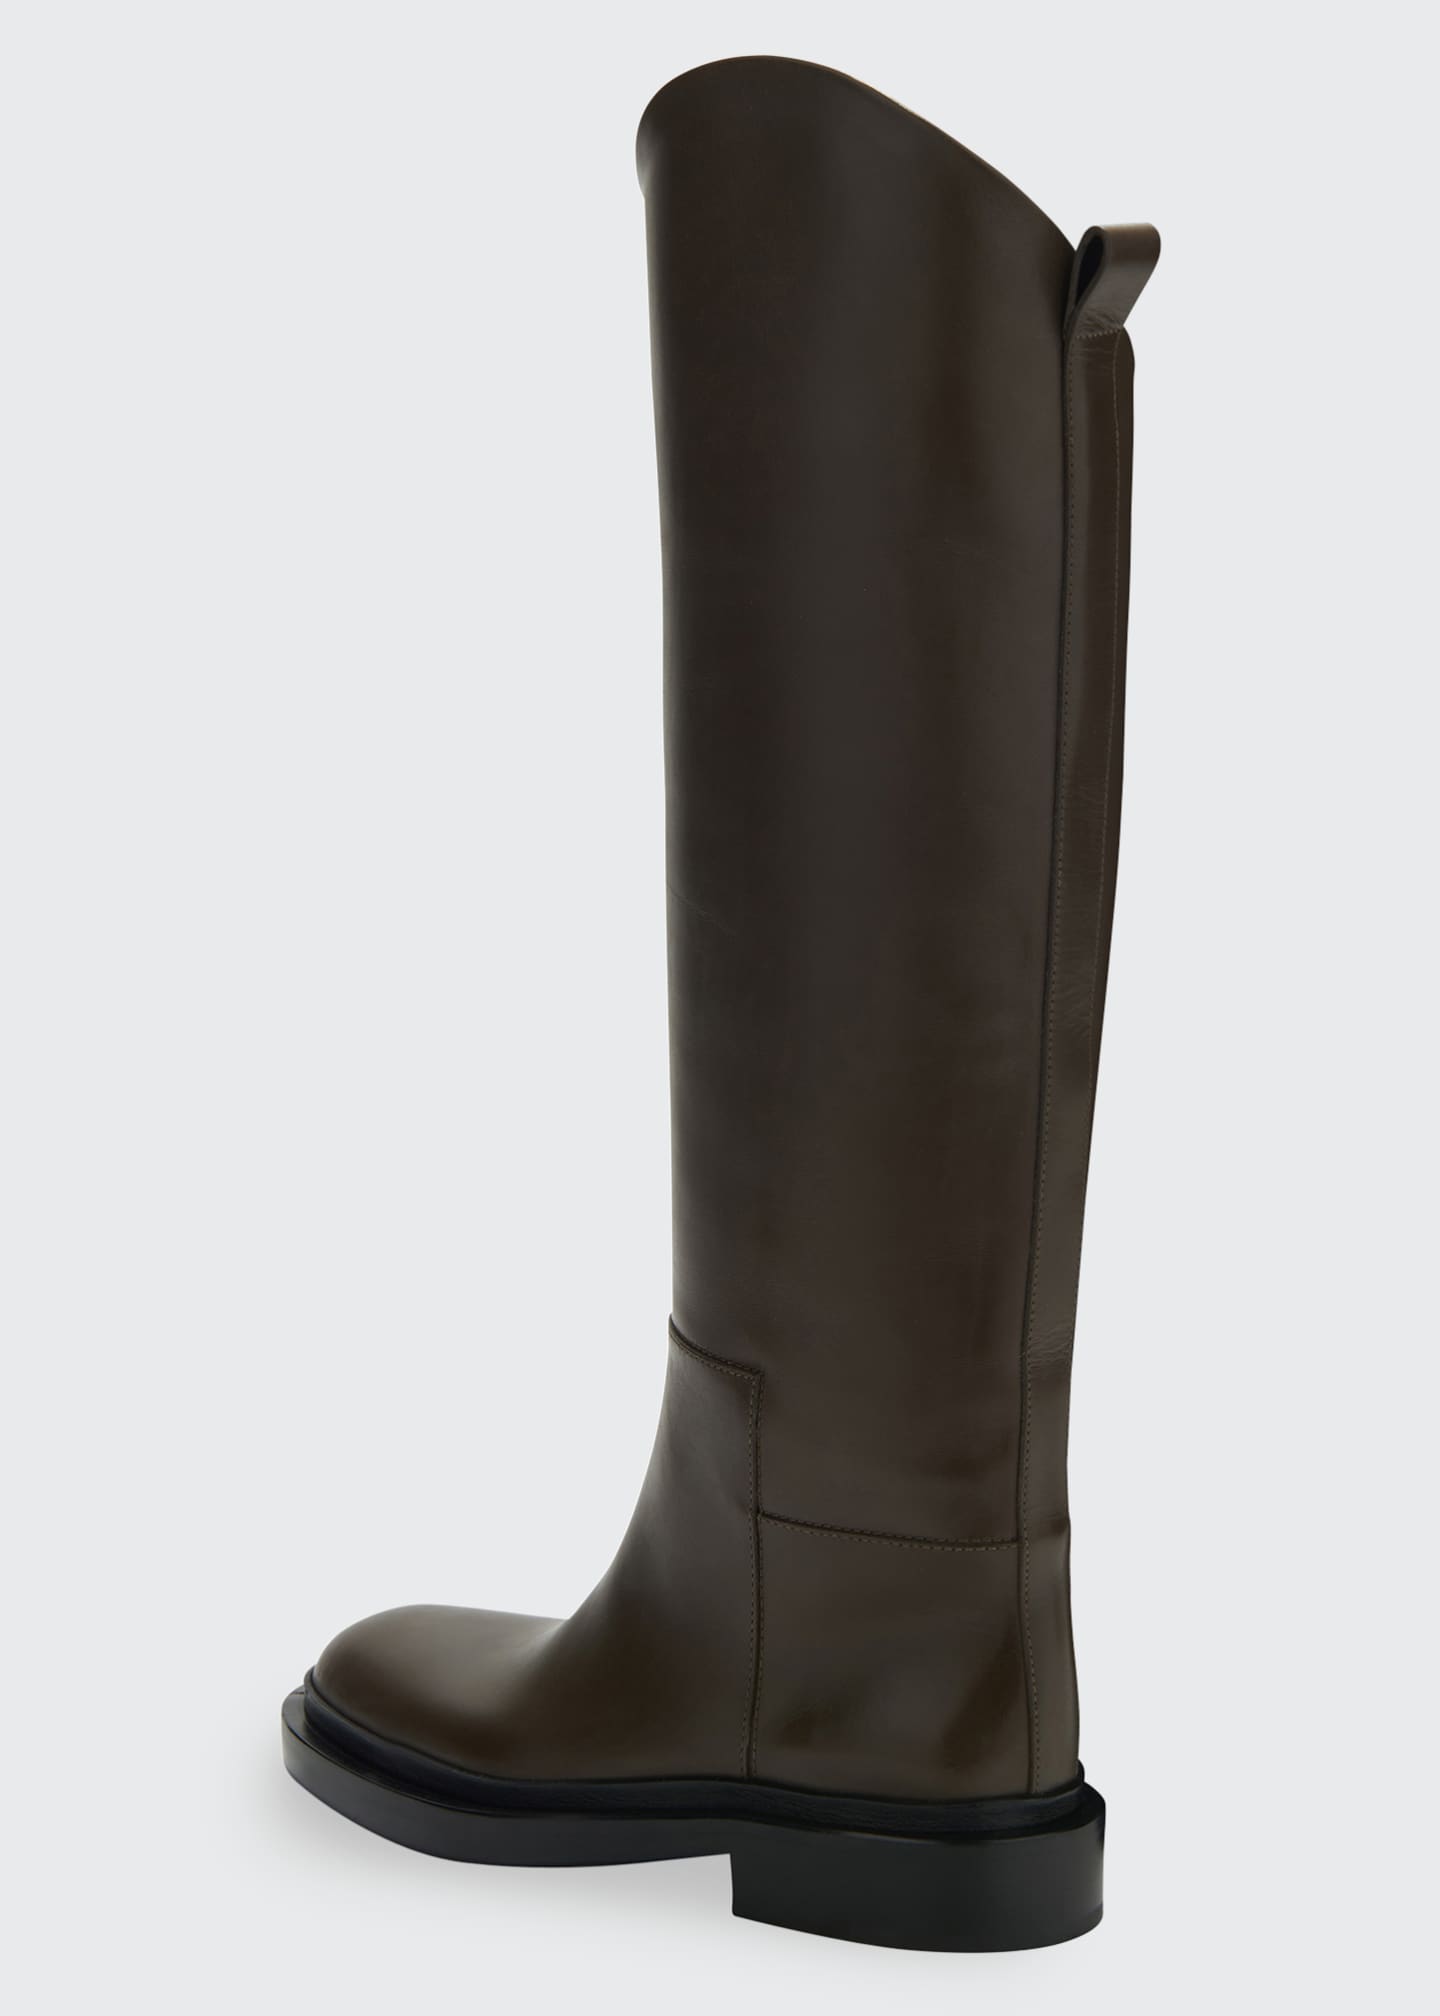 Jil Sander Royal Calfskin Tall Riding Boots - Bergdorf Goodman